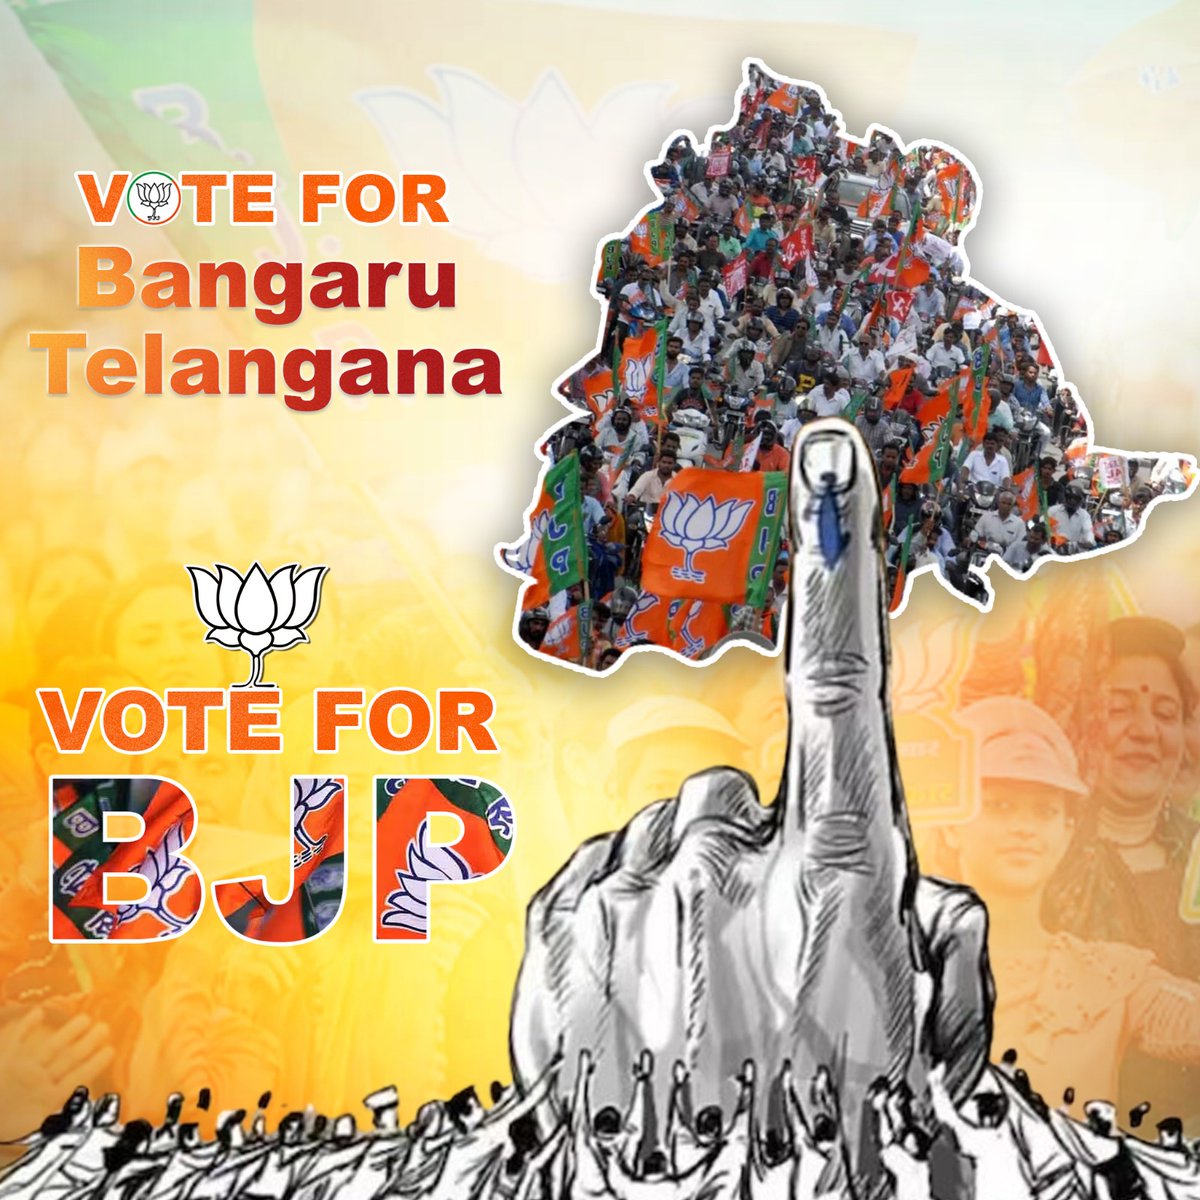 Vote For Bangaru Telangana
Vote for BJP
#TelanganaWithBJP